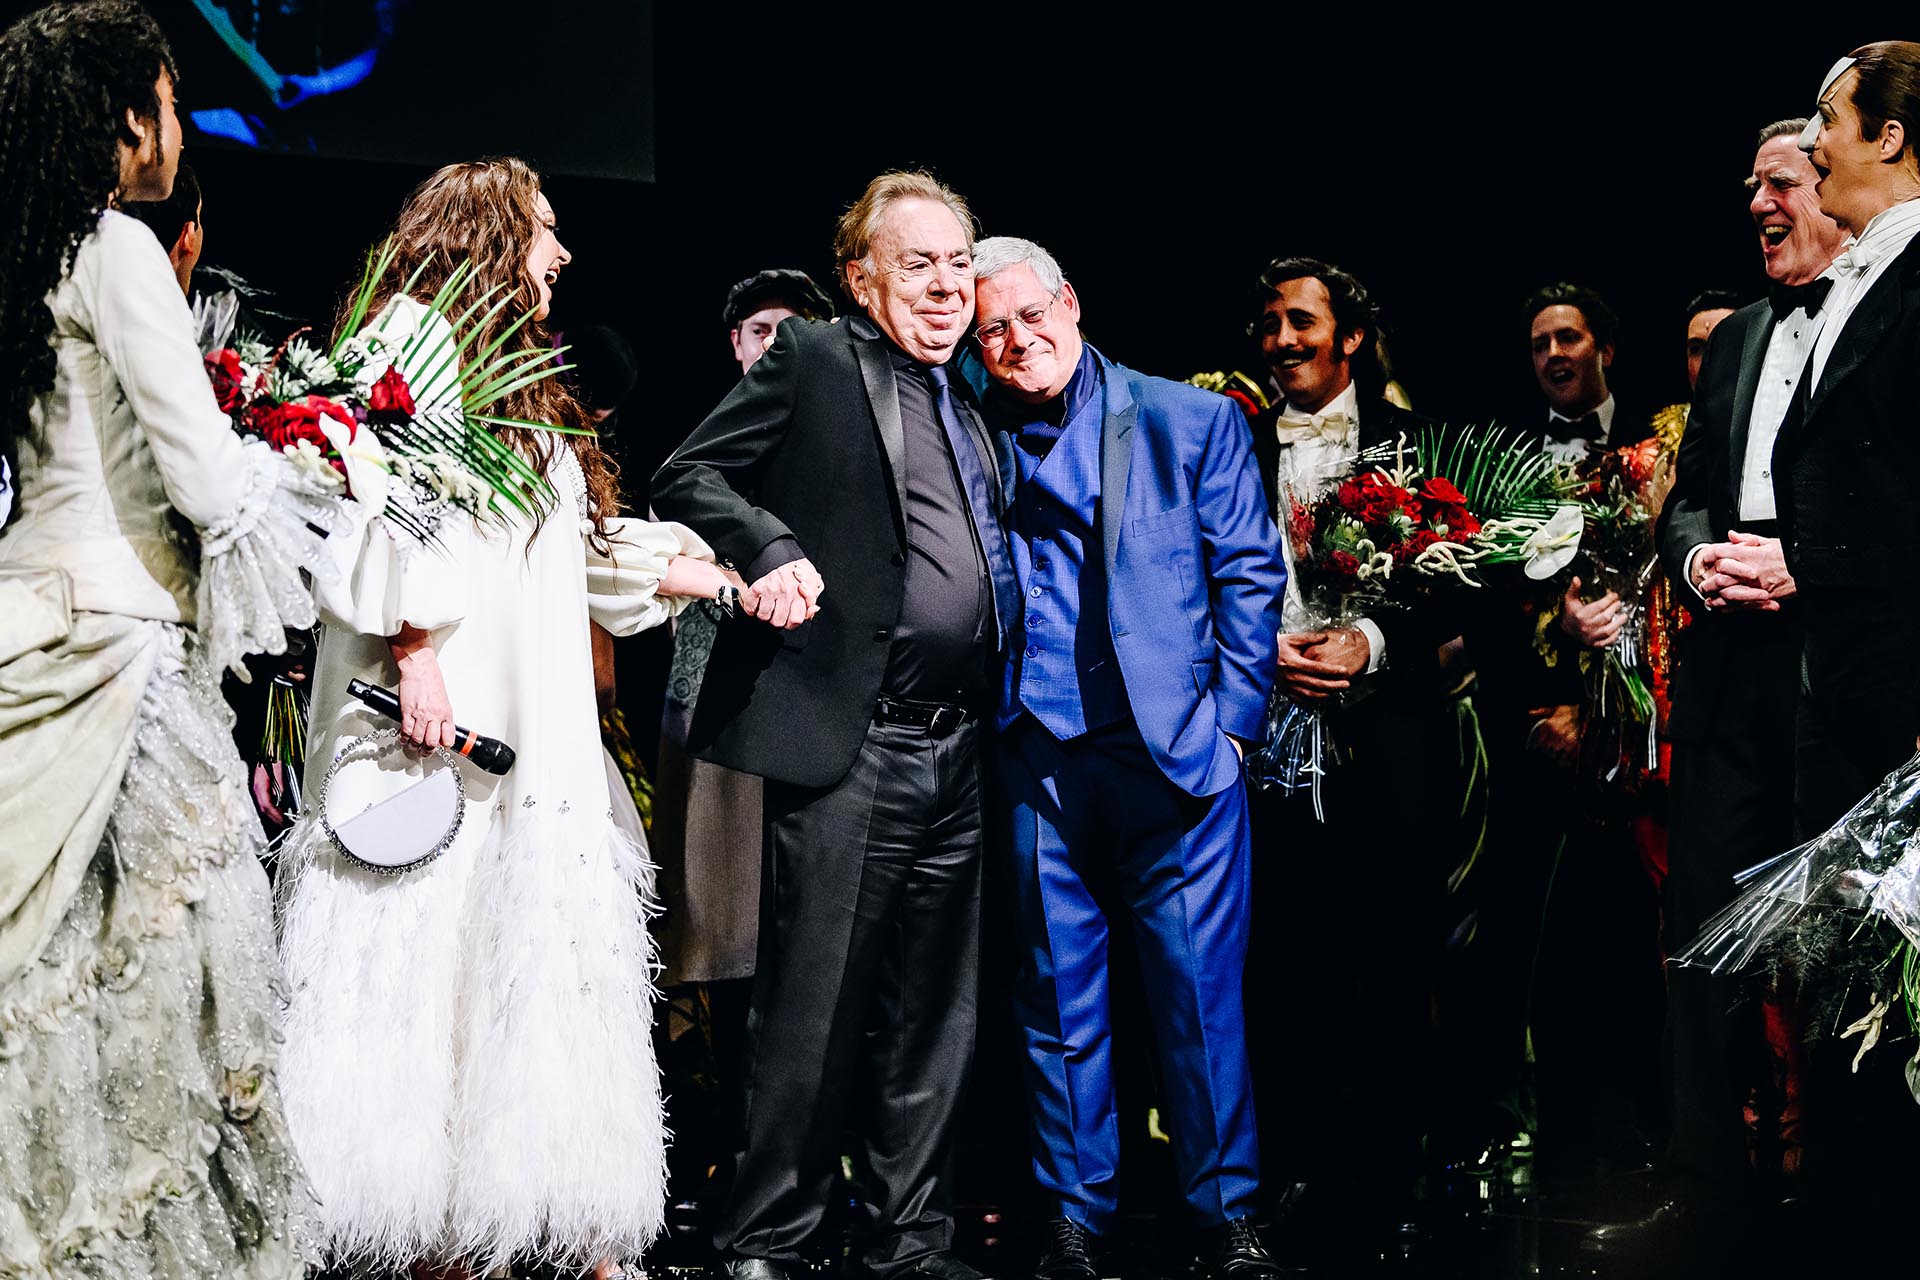 اندرو لوید وبر و کامرون مکینتاش (مرکز) در اجرای پایانی شبح اپرا در تئاتر مجستیک در 16 آوریل 2023 در شهر نیویورک